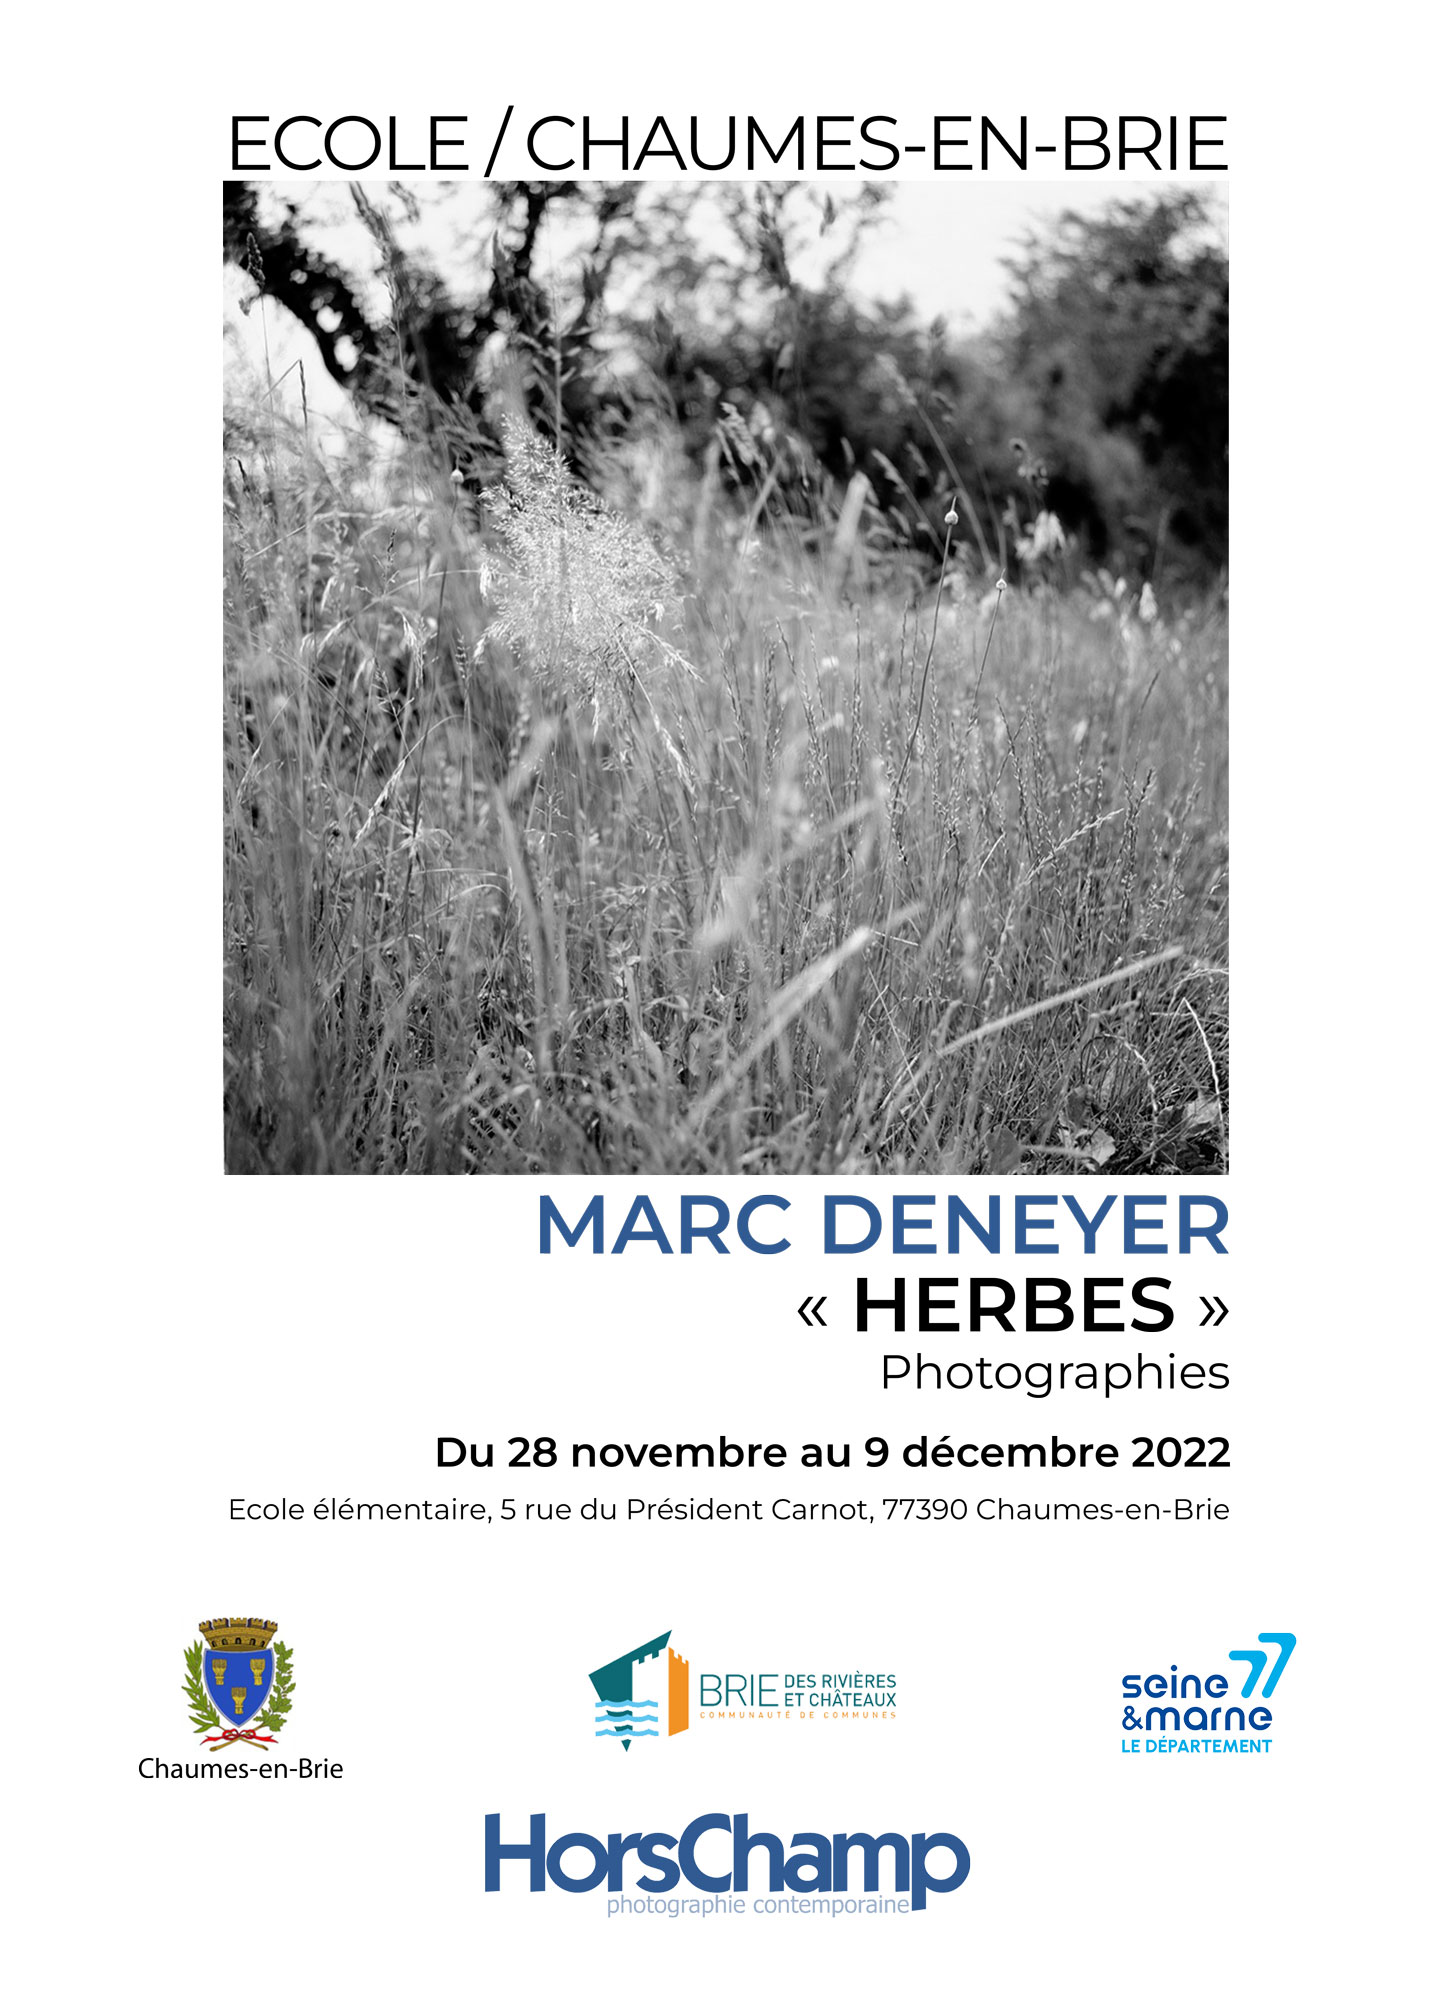 Exposition photographies de Marc Deneyer à Chaumes en brie décembre 2022